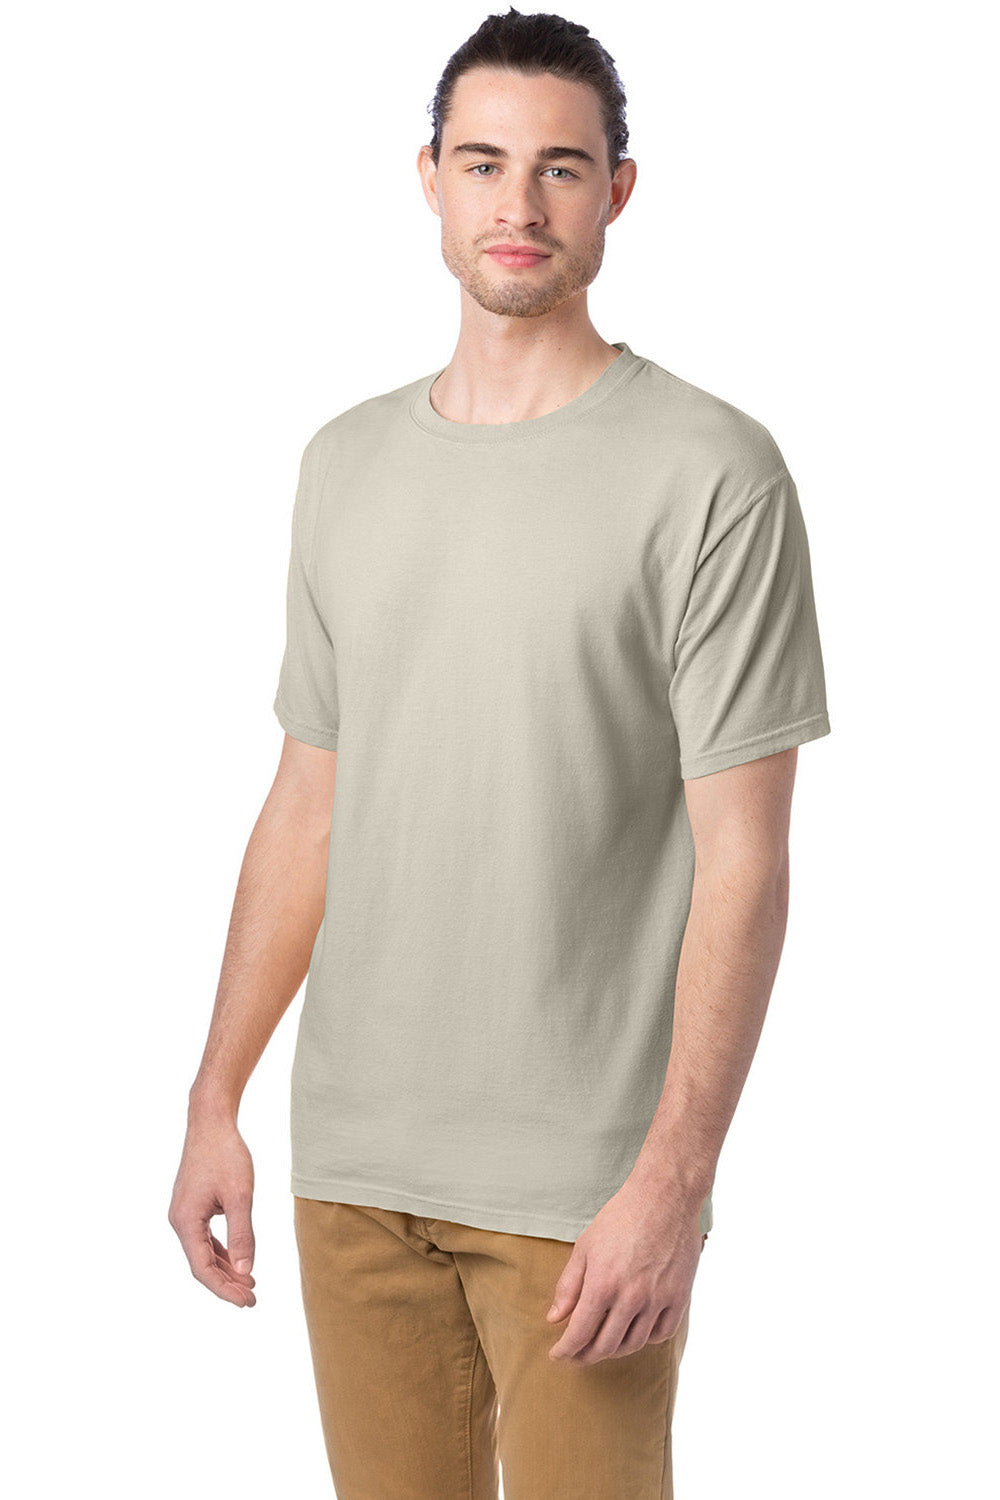 ComfortWash by Hanes GDH100 Mens Short Sleeve Crewneck T-Shirt Parchment 3Q